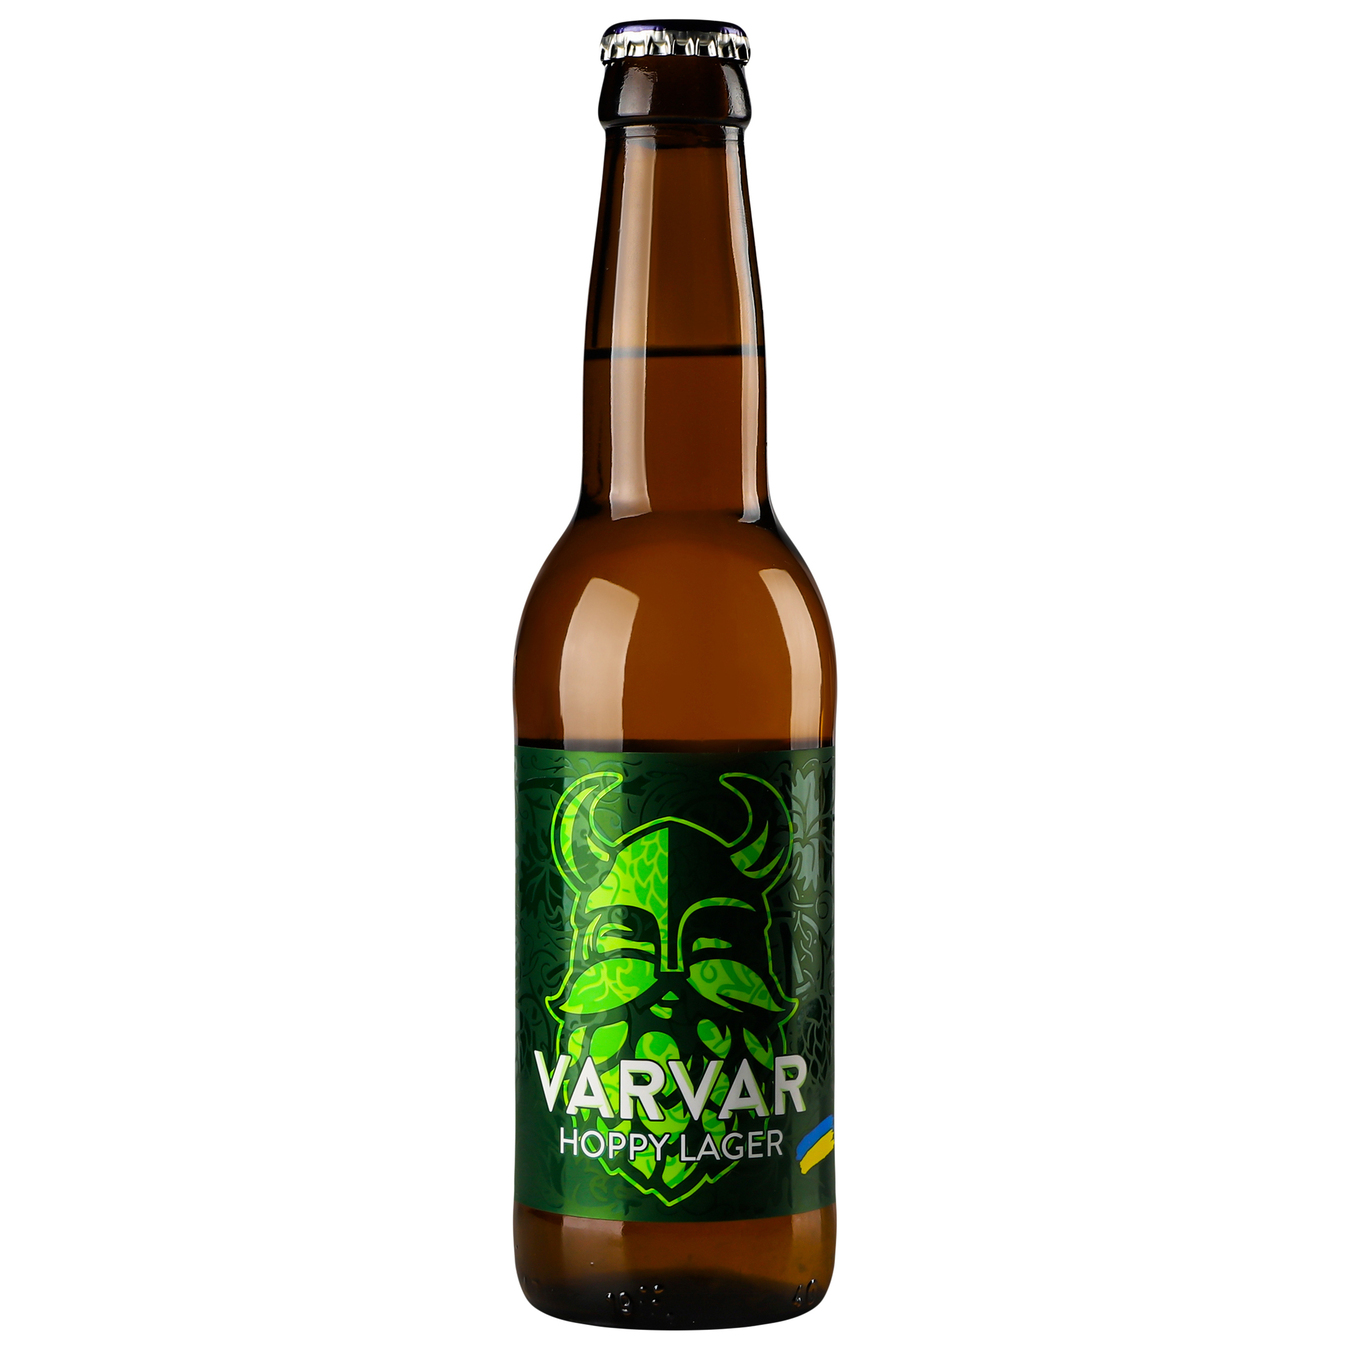 Light beer VARVAR HOPPY LAGER 5.6% 0.33l glass bottle